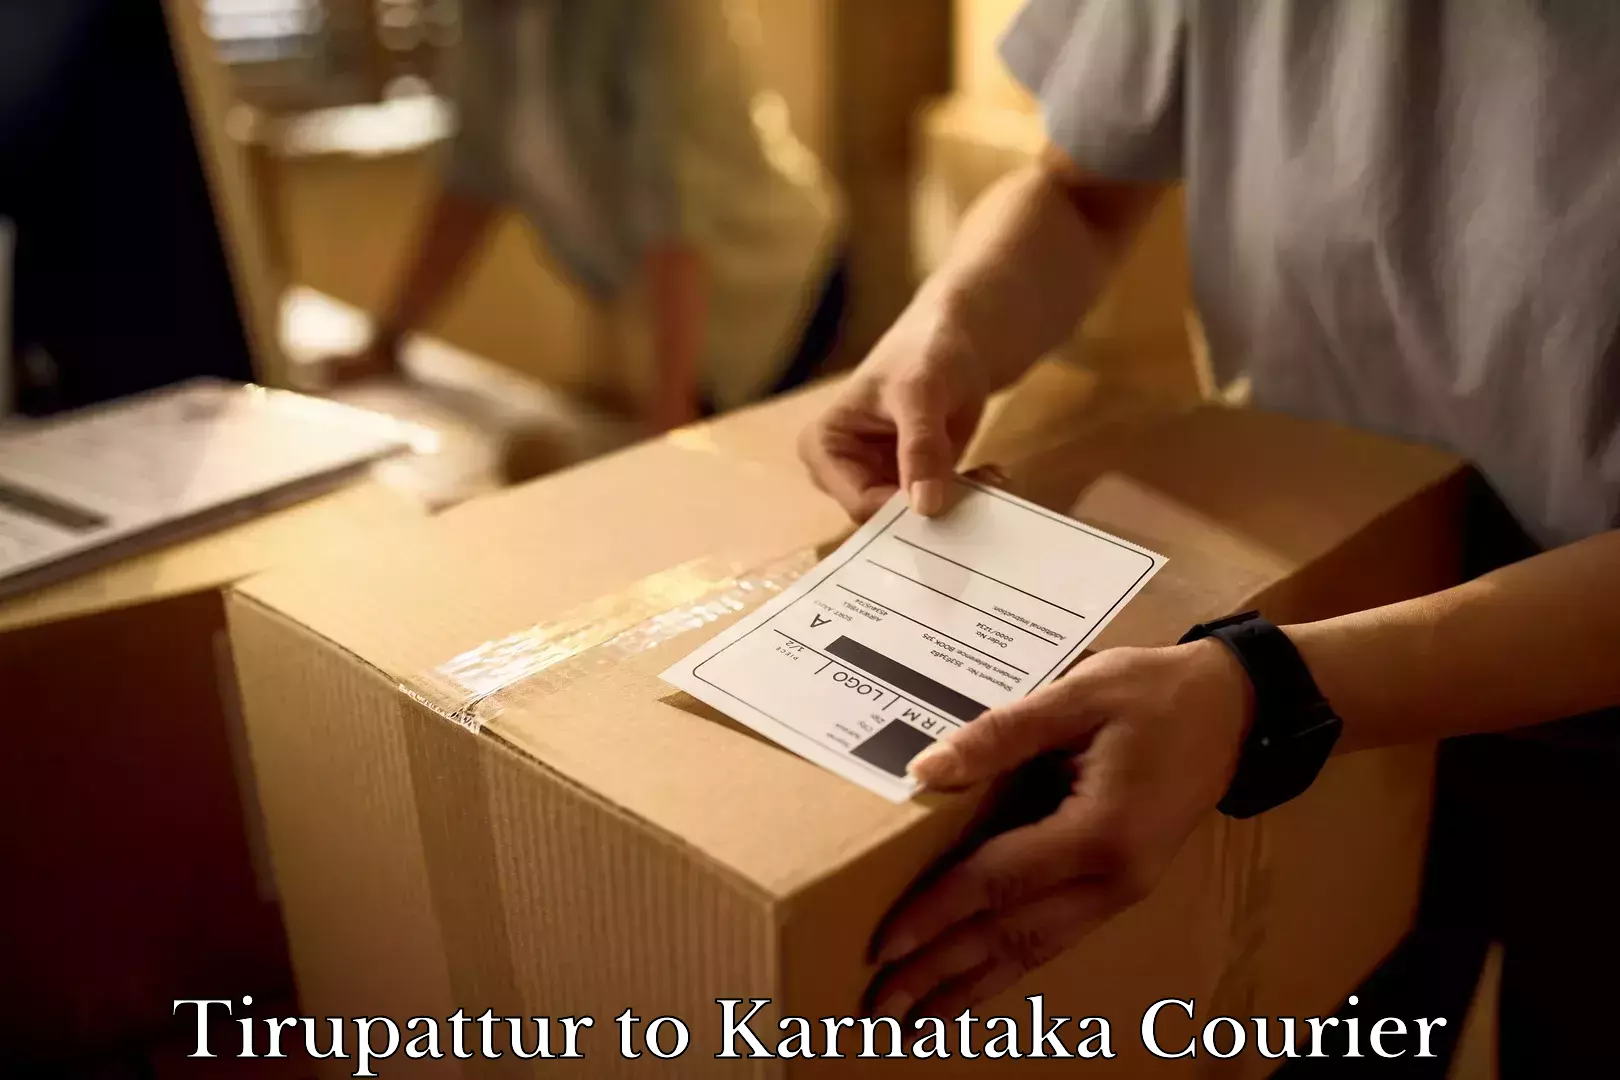 Furniture moving specialists Tirupattur to Srirangapatna